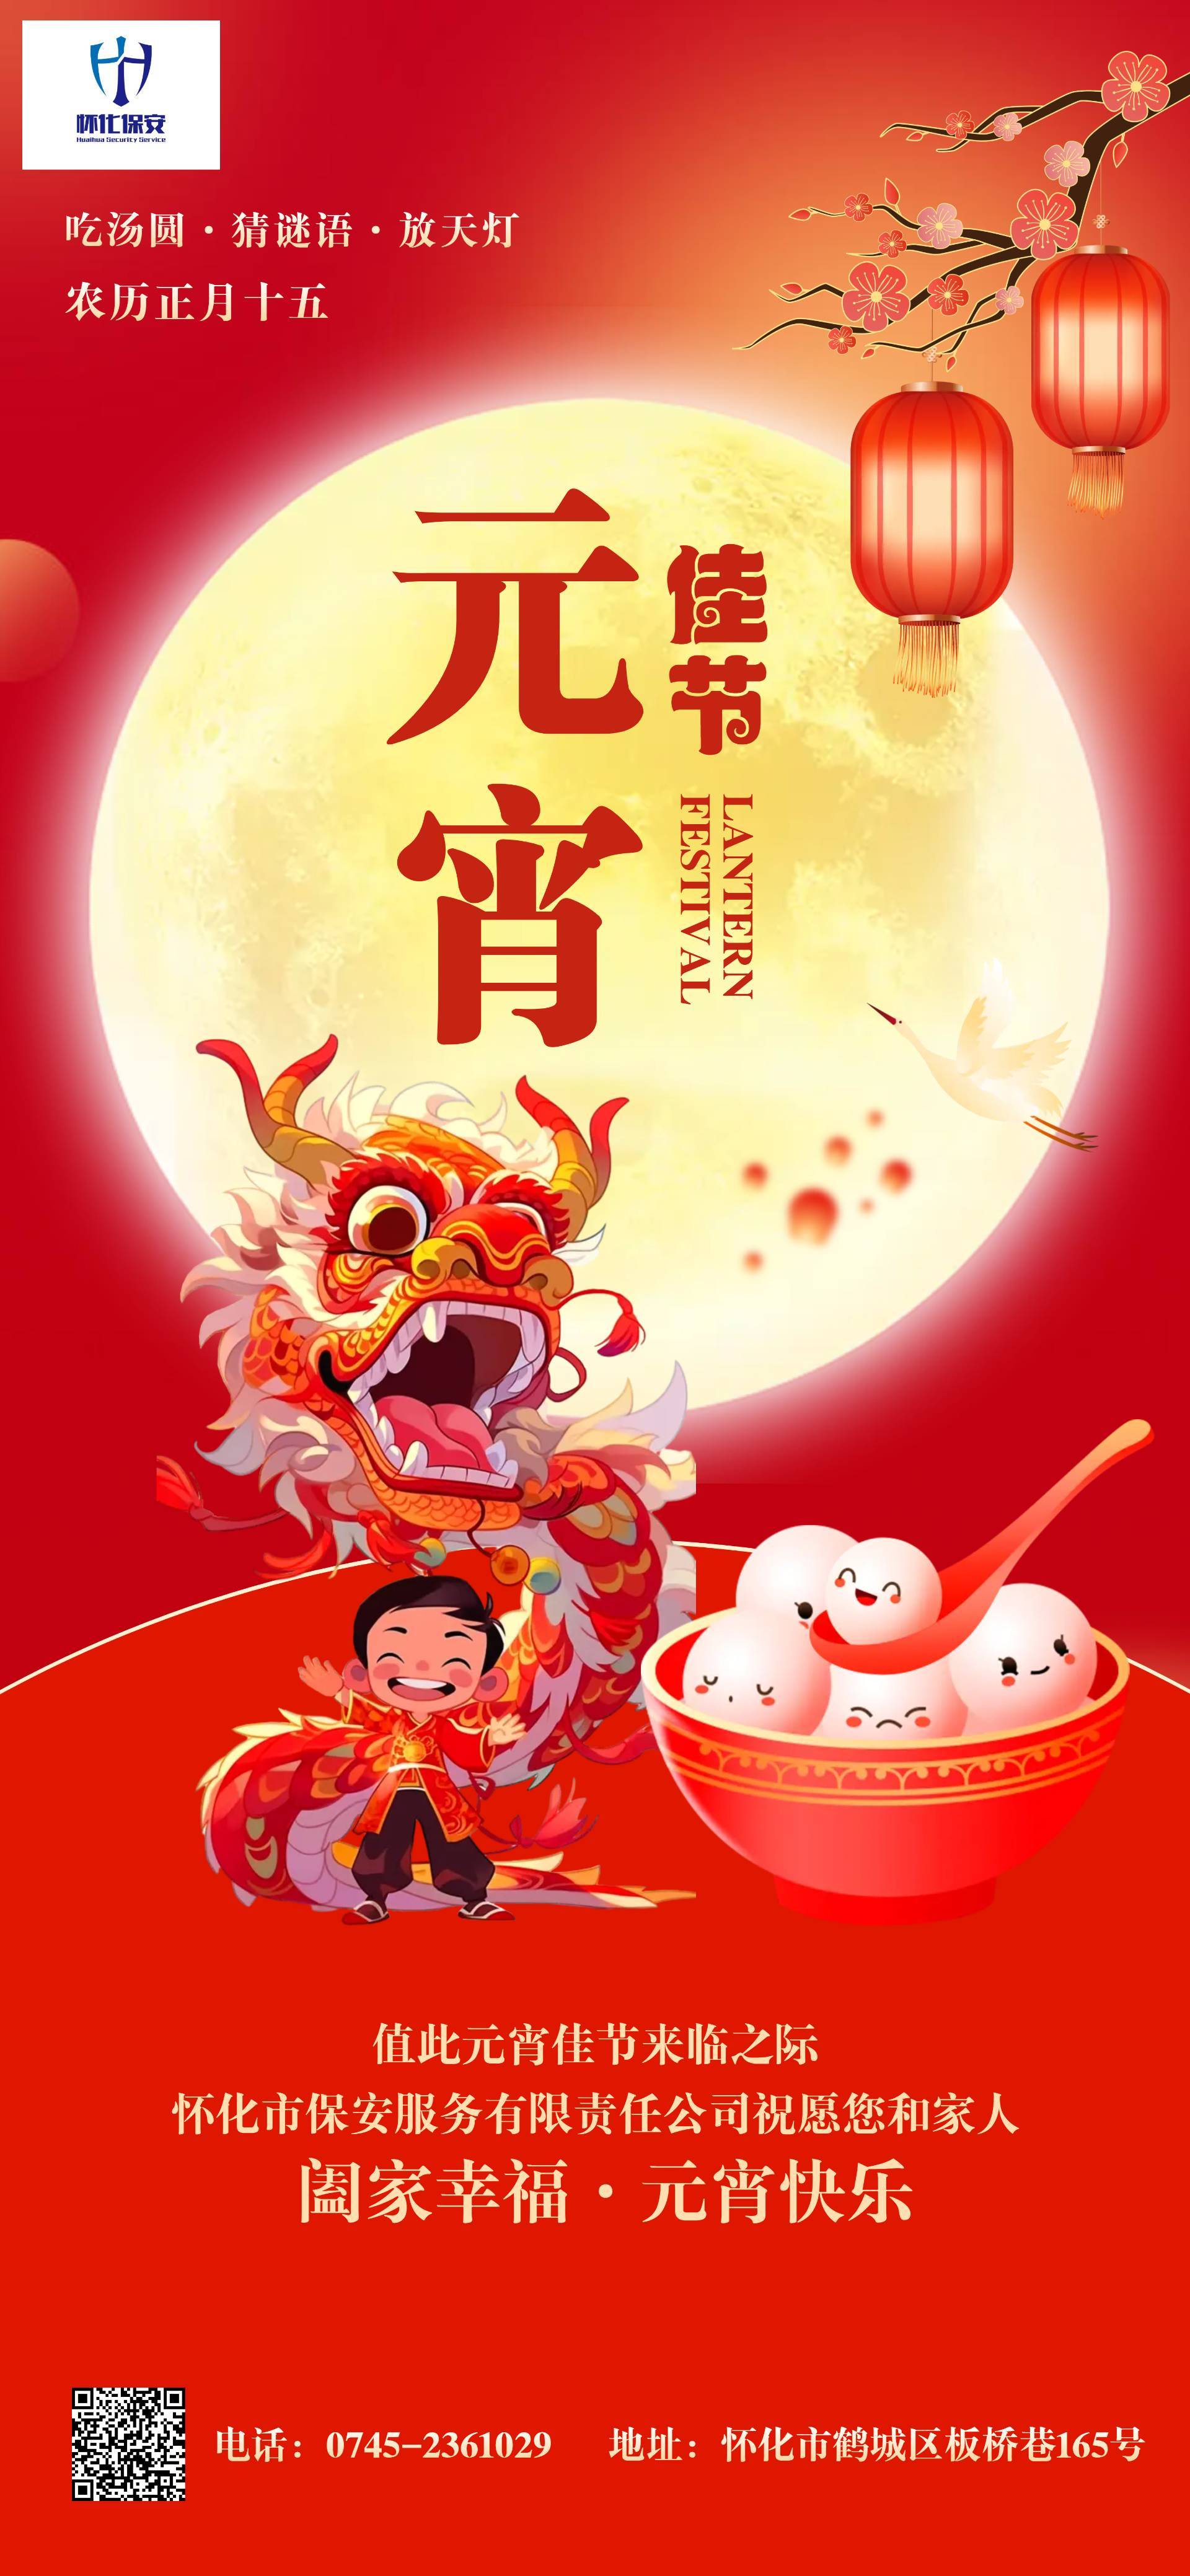 農曆正月(yuè)十五元宵節祝福(小于5M)